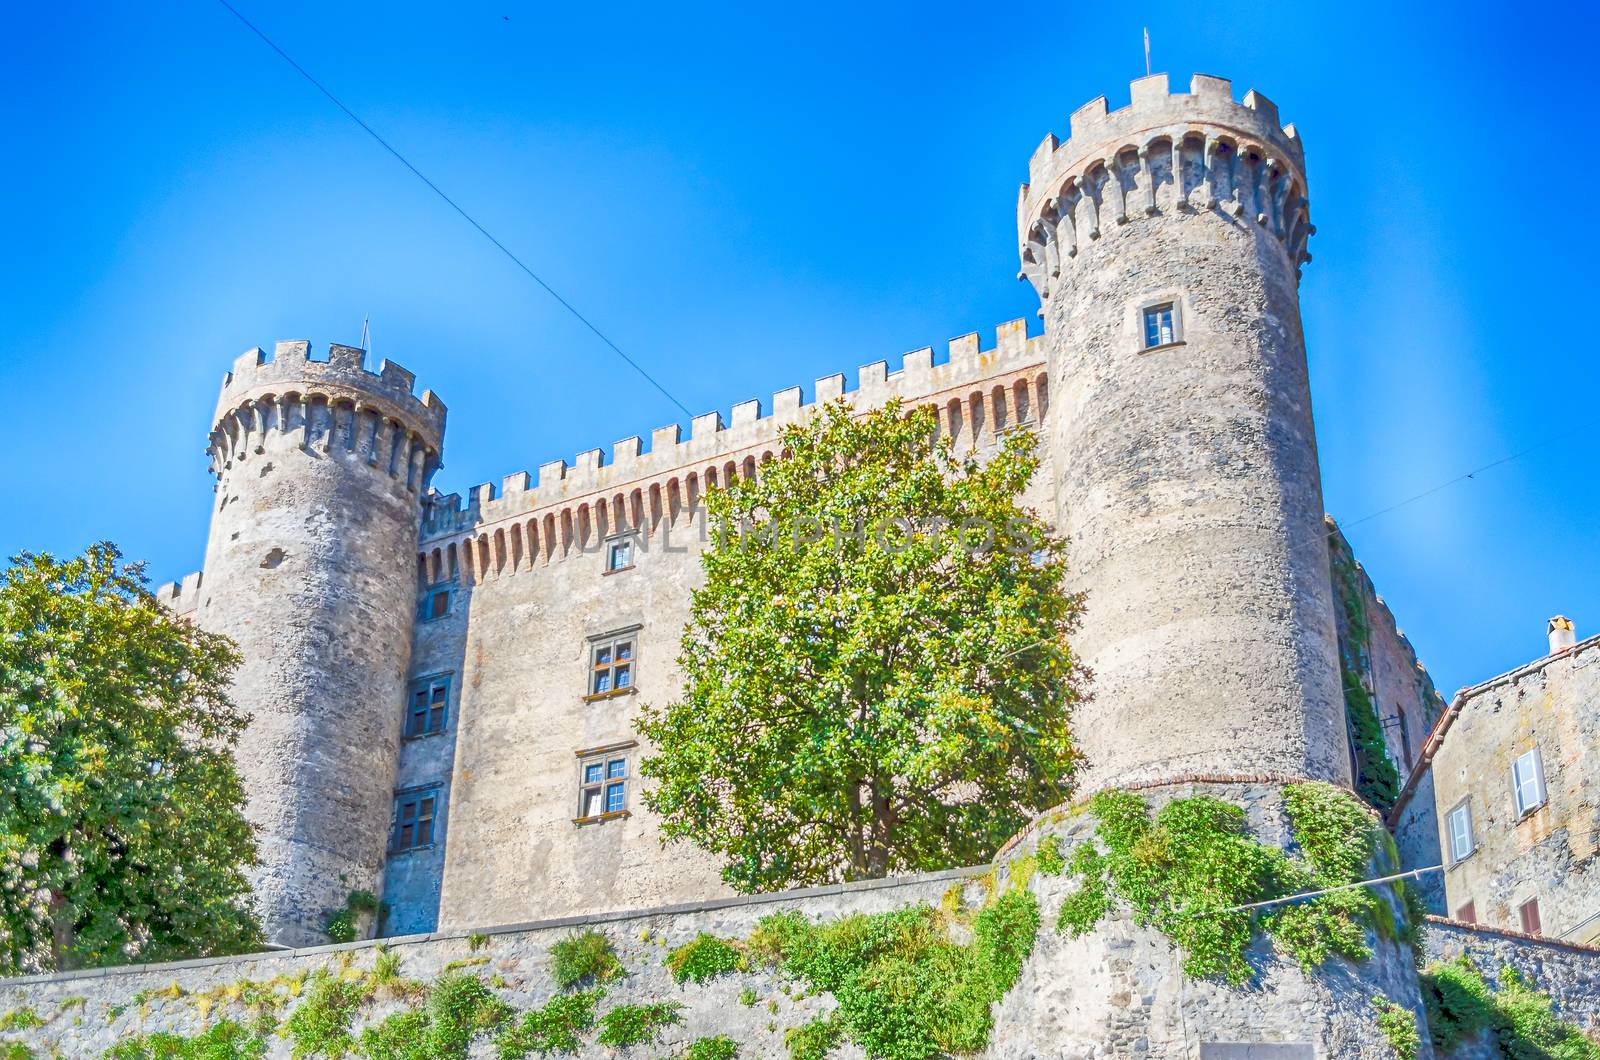 View of The Odescalchi Castle in Bracciano, Italy